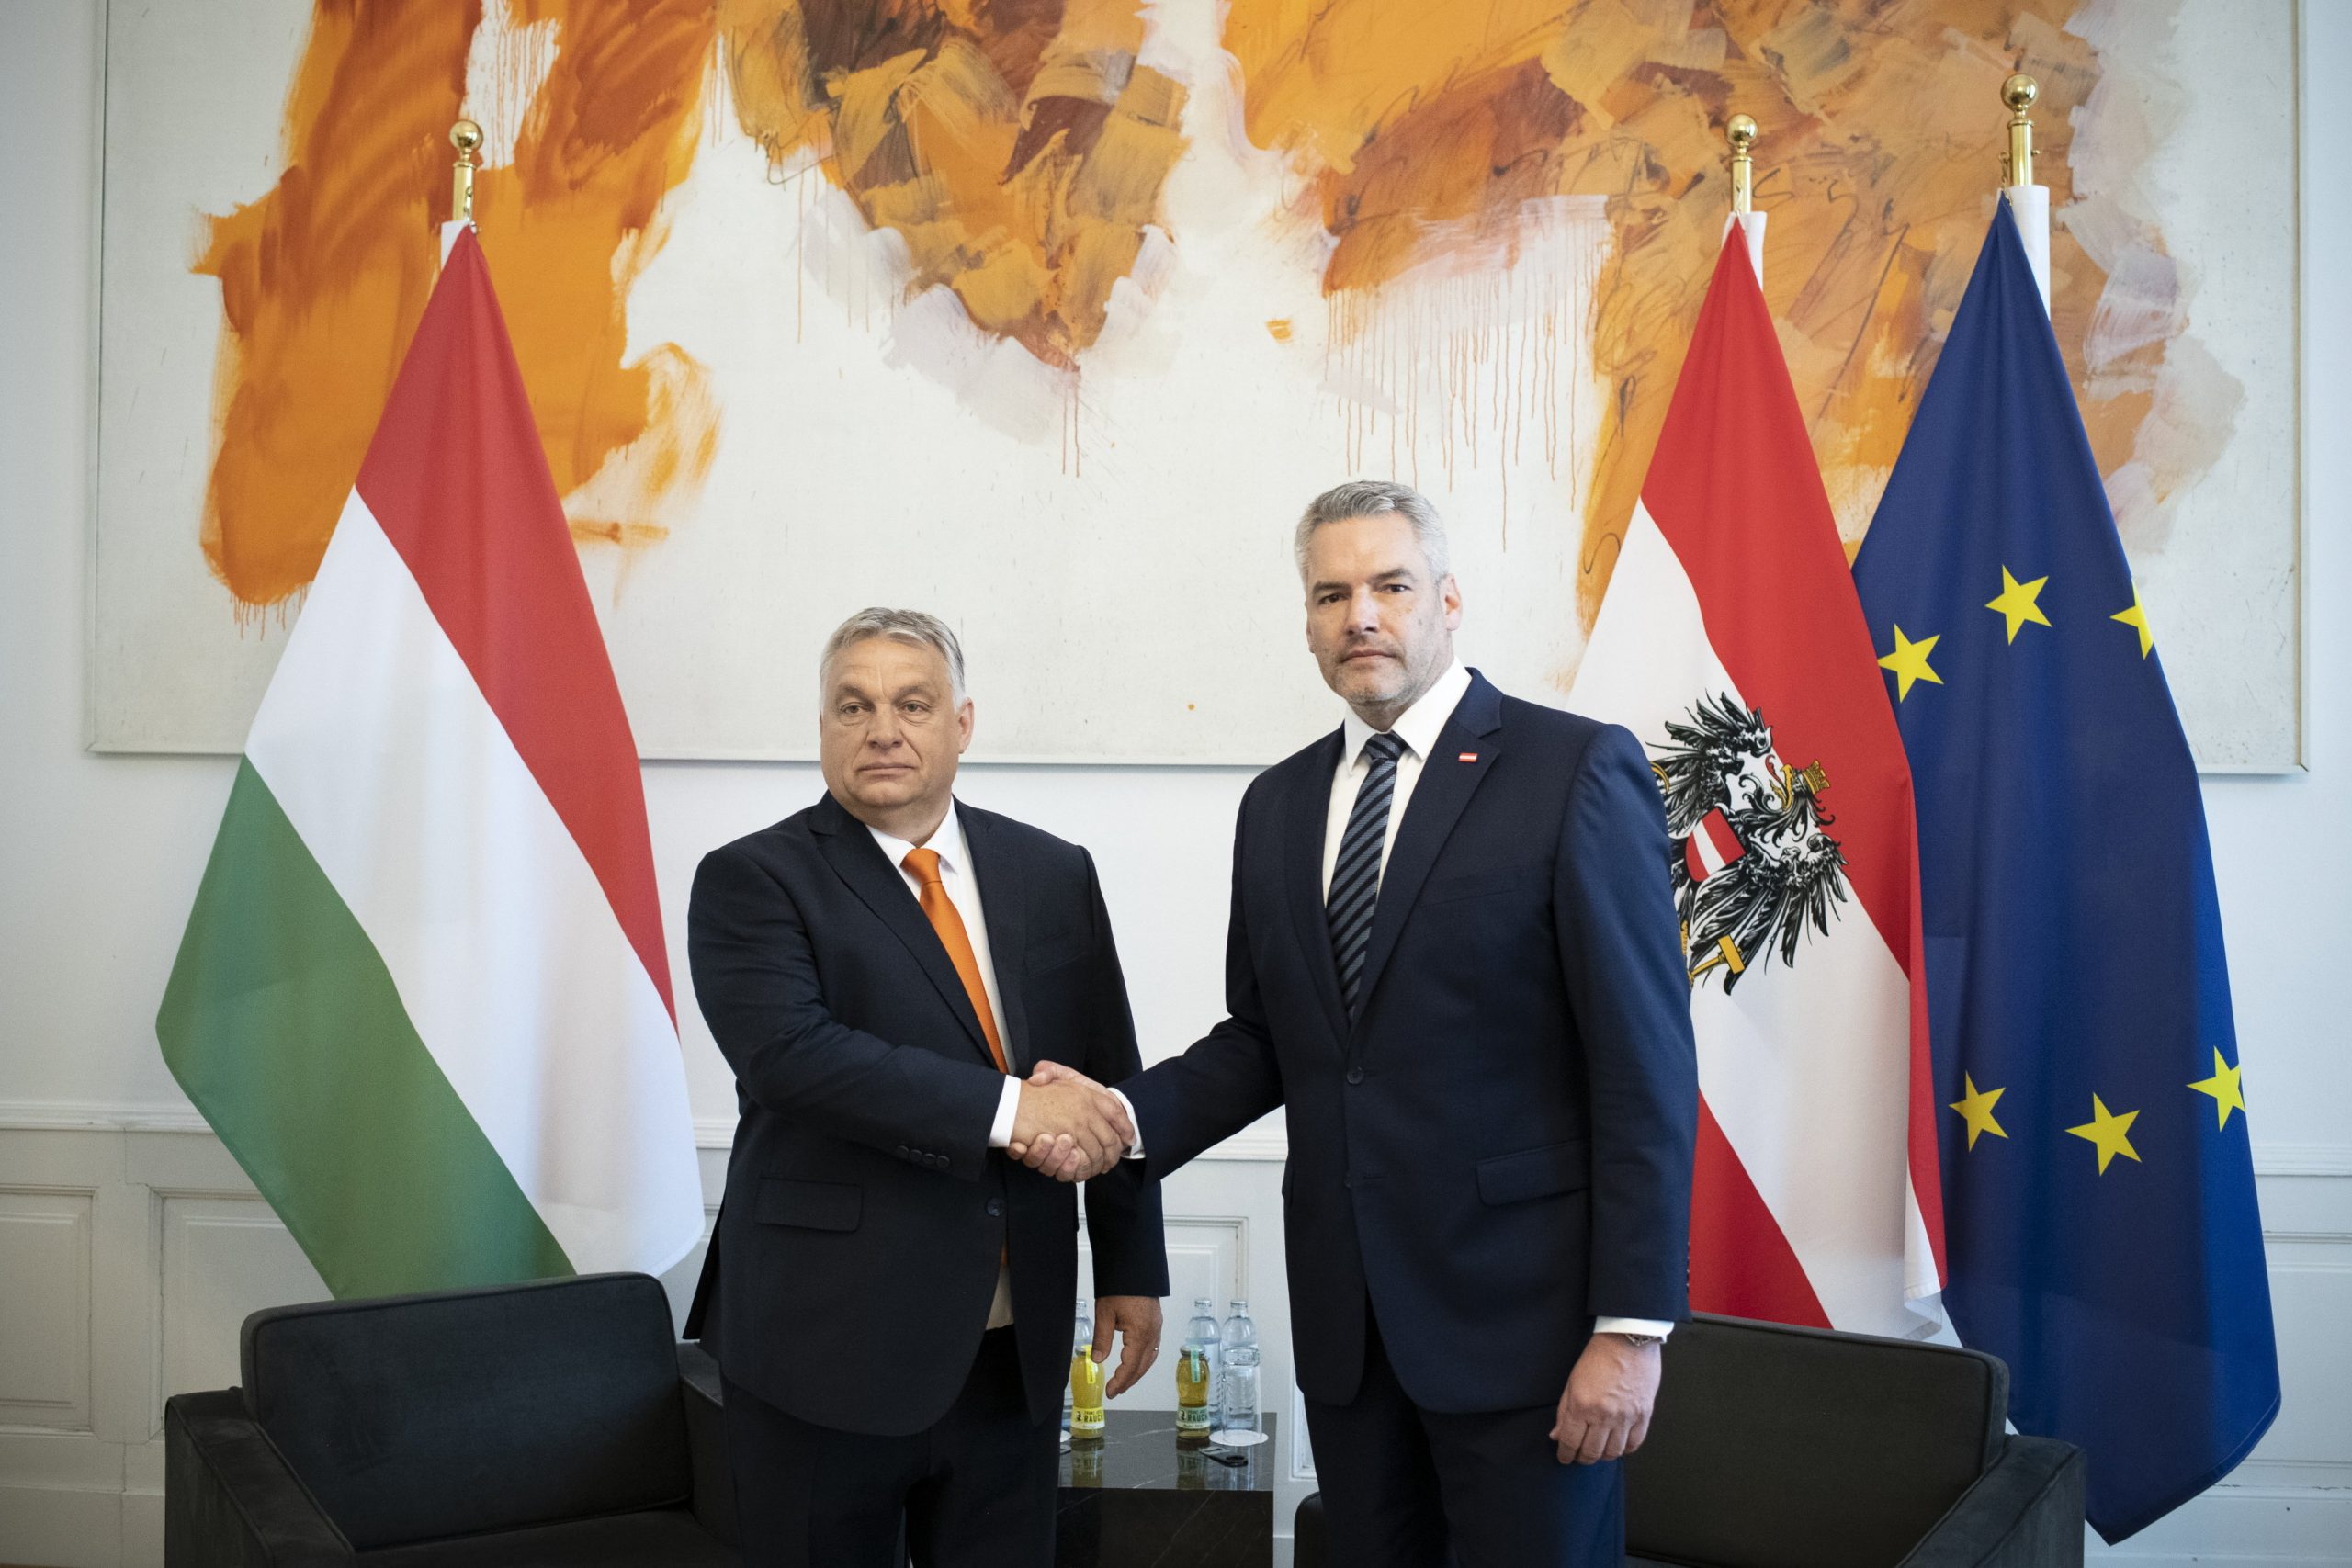 Viktor Orbán: „Ich bin ein Anti-Migrations-Politiker“